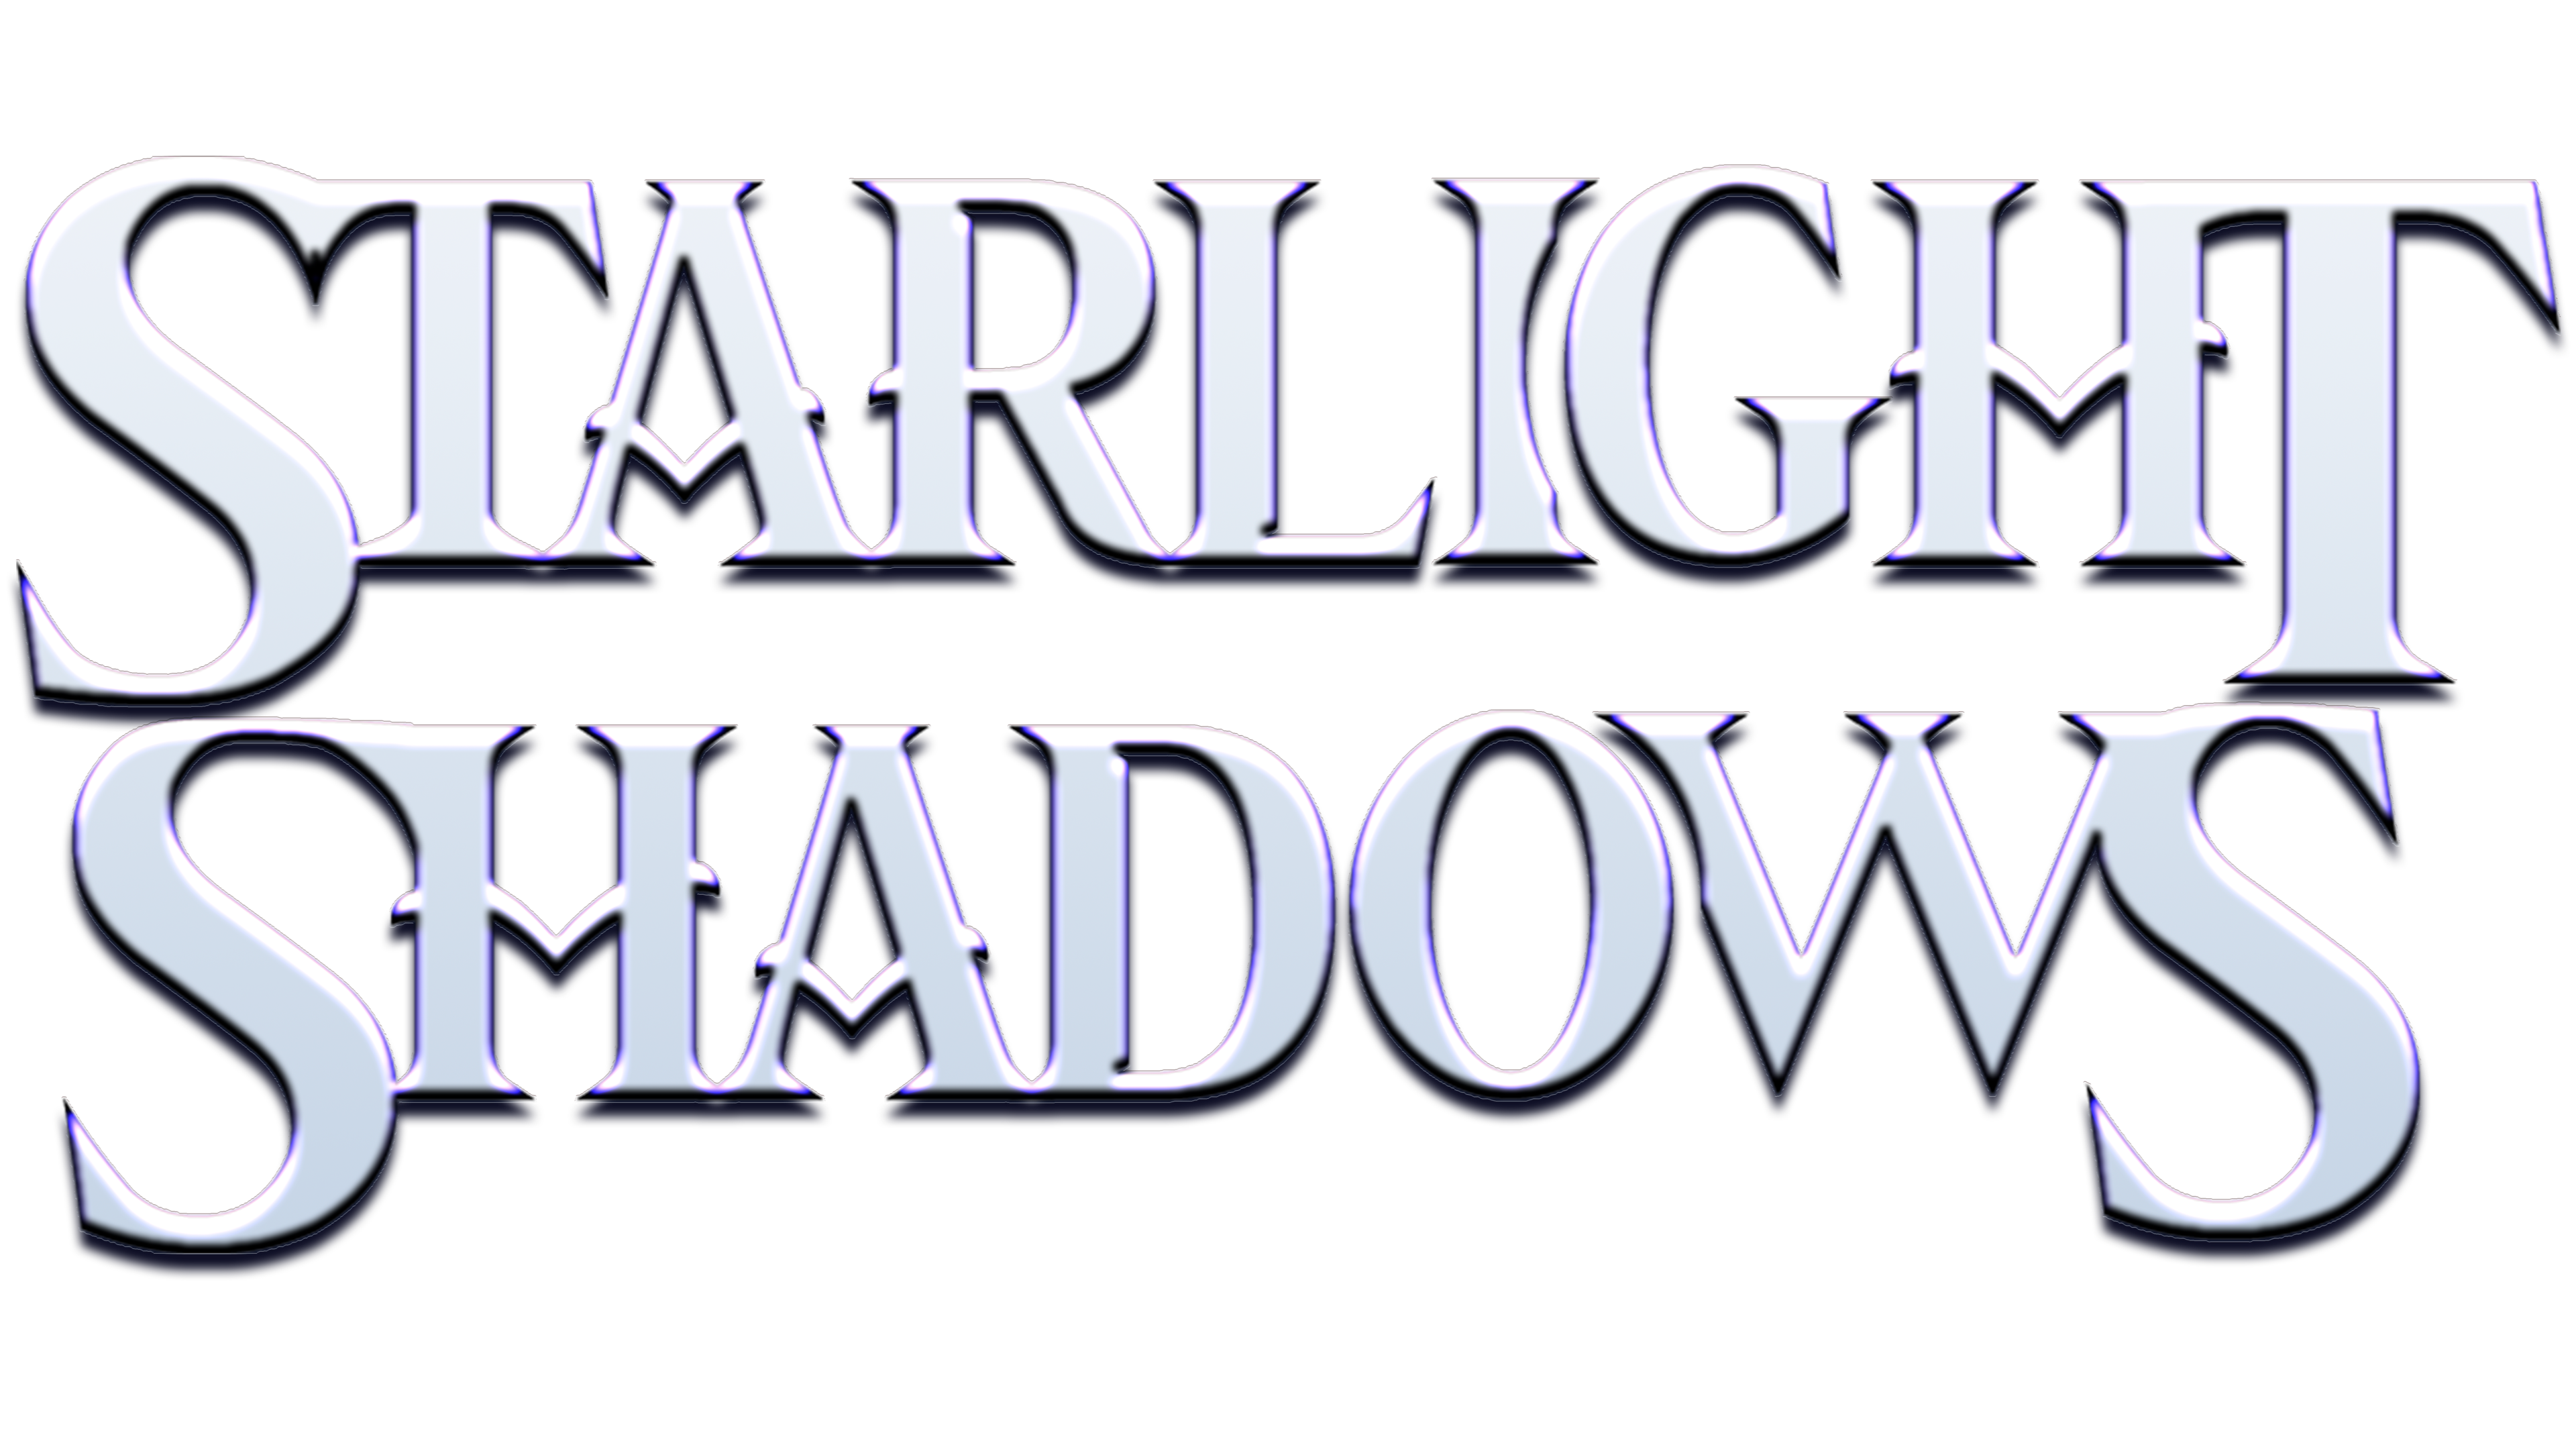 Starlight Shadows